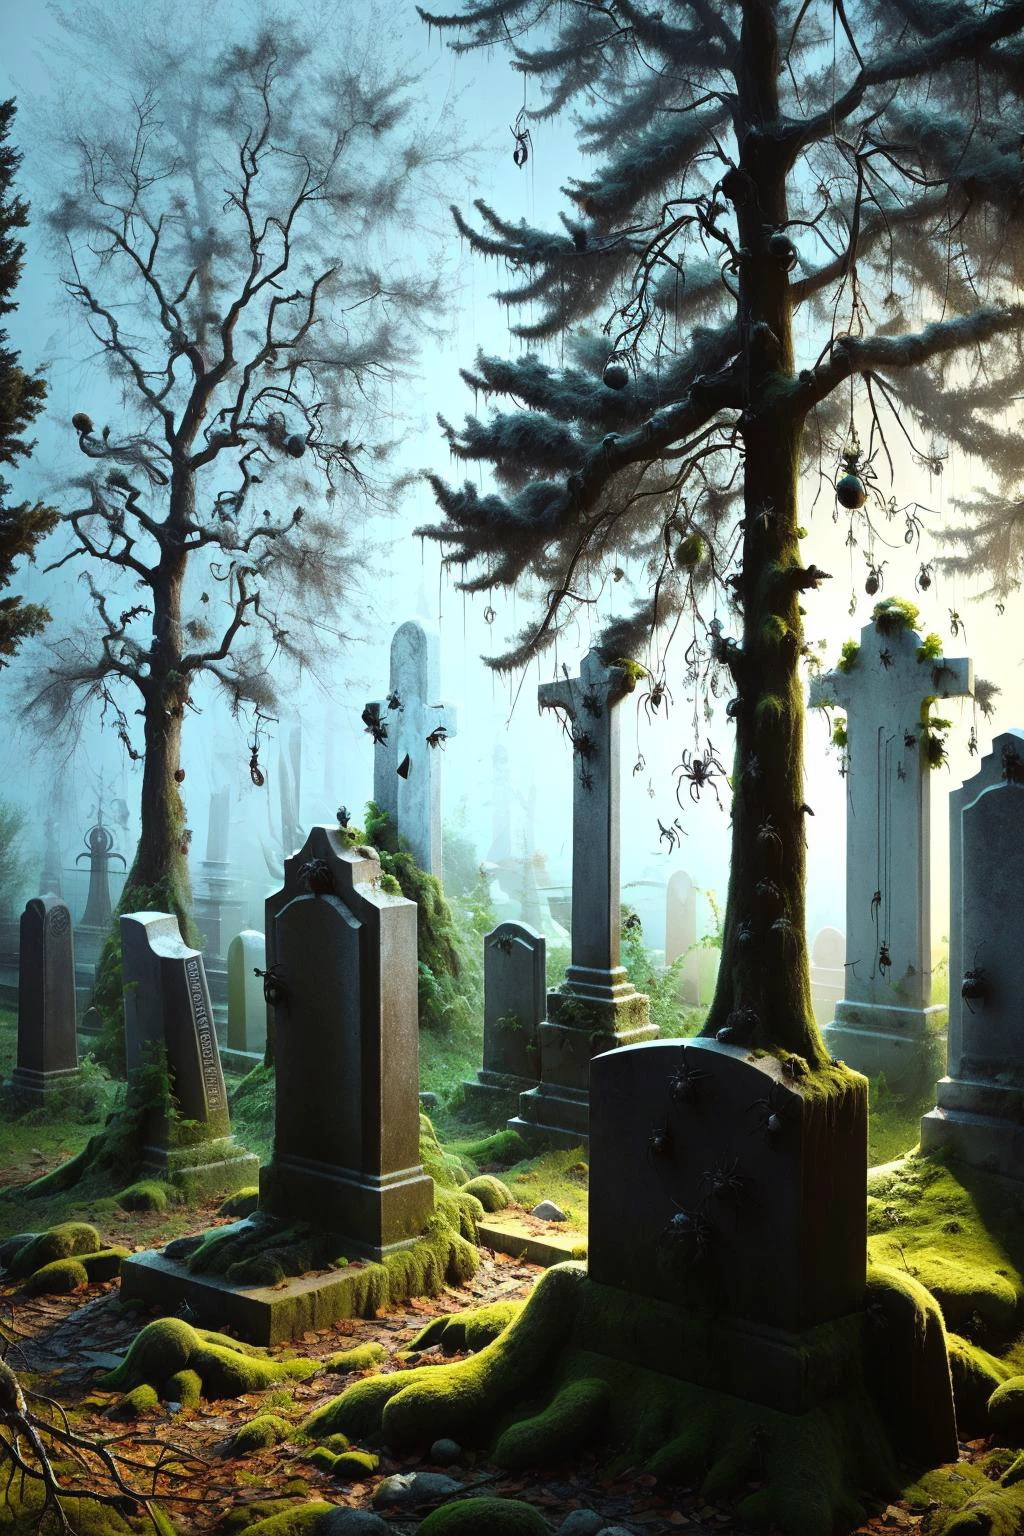 夜の霧の墓地, 古い墓石と節くれだった木々, 墓の上を這い、枝からぶら下がるais-spiderz, ぞっとするような幽霊のような雰囲気を醸し出す 